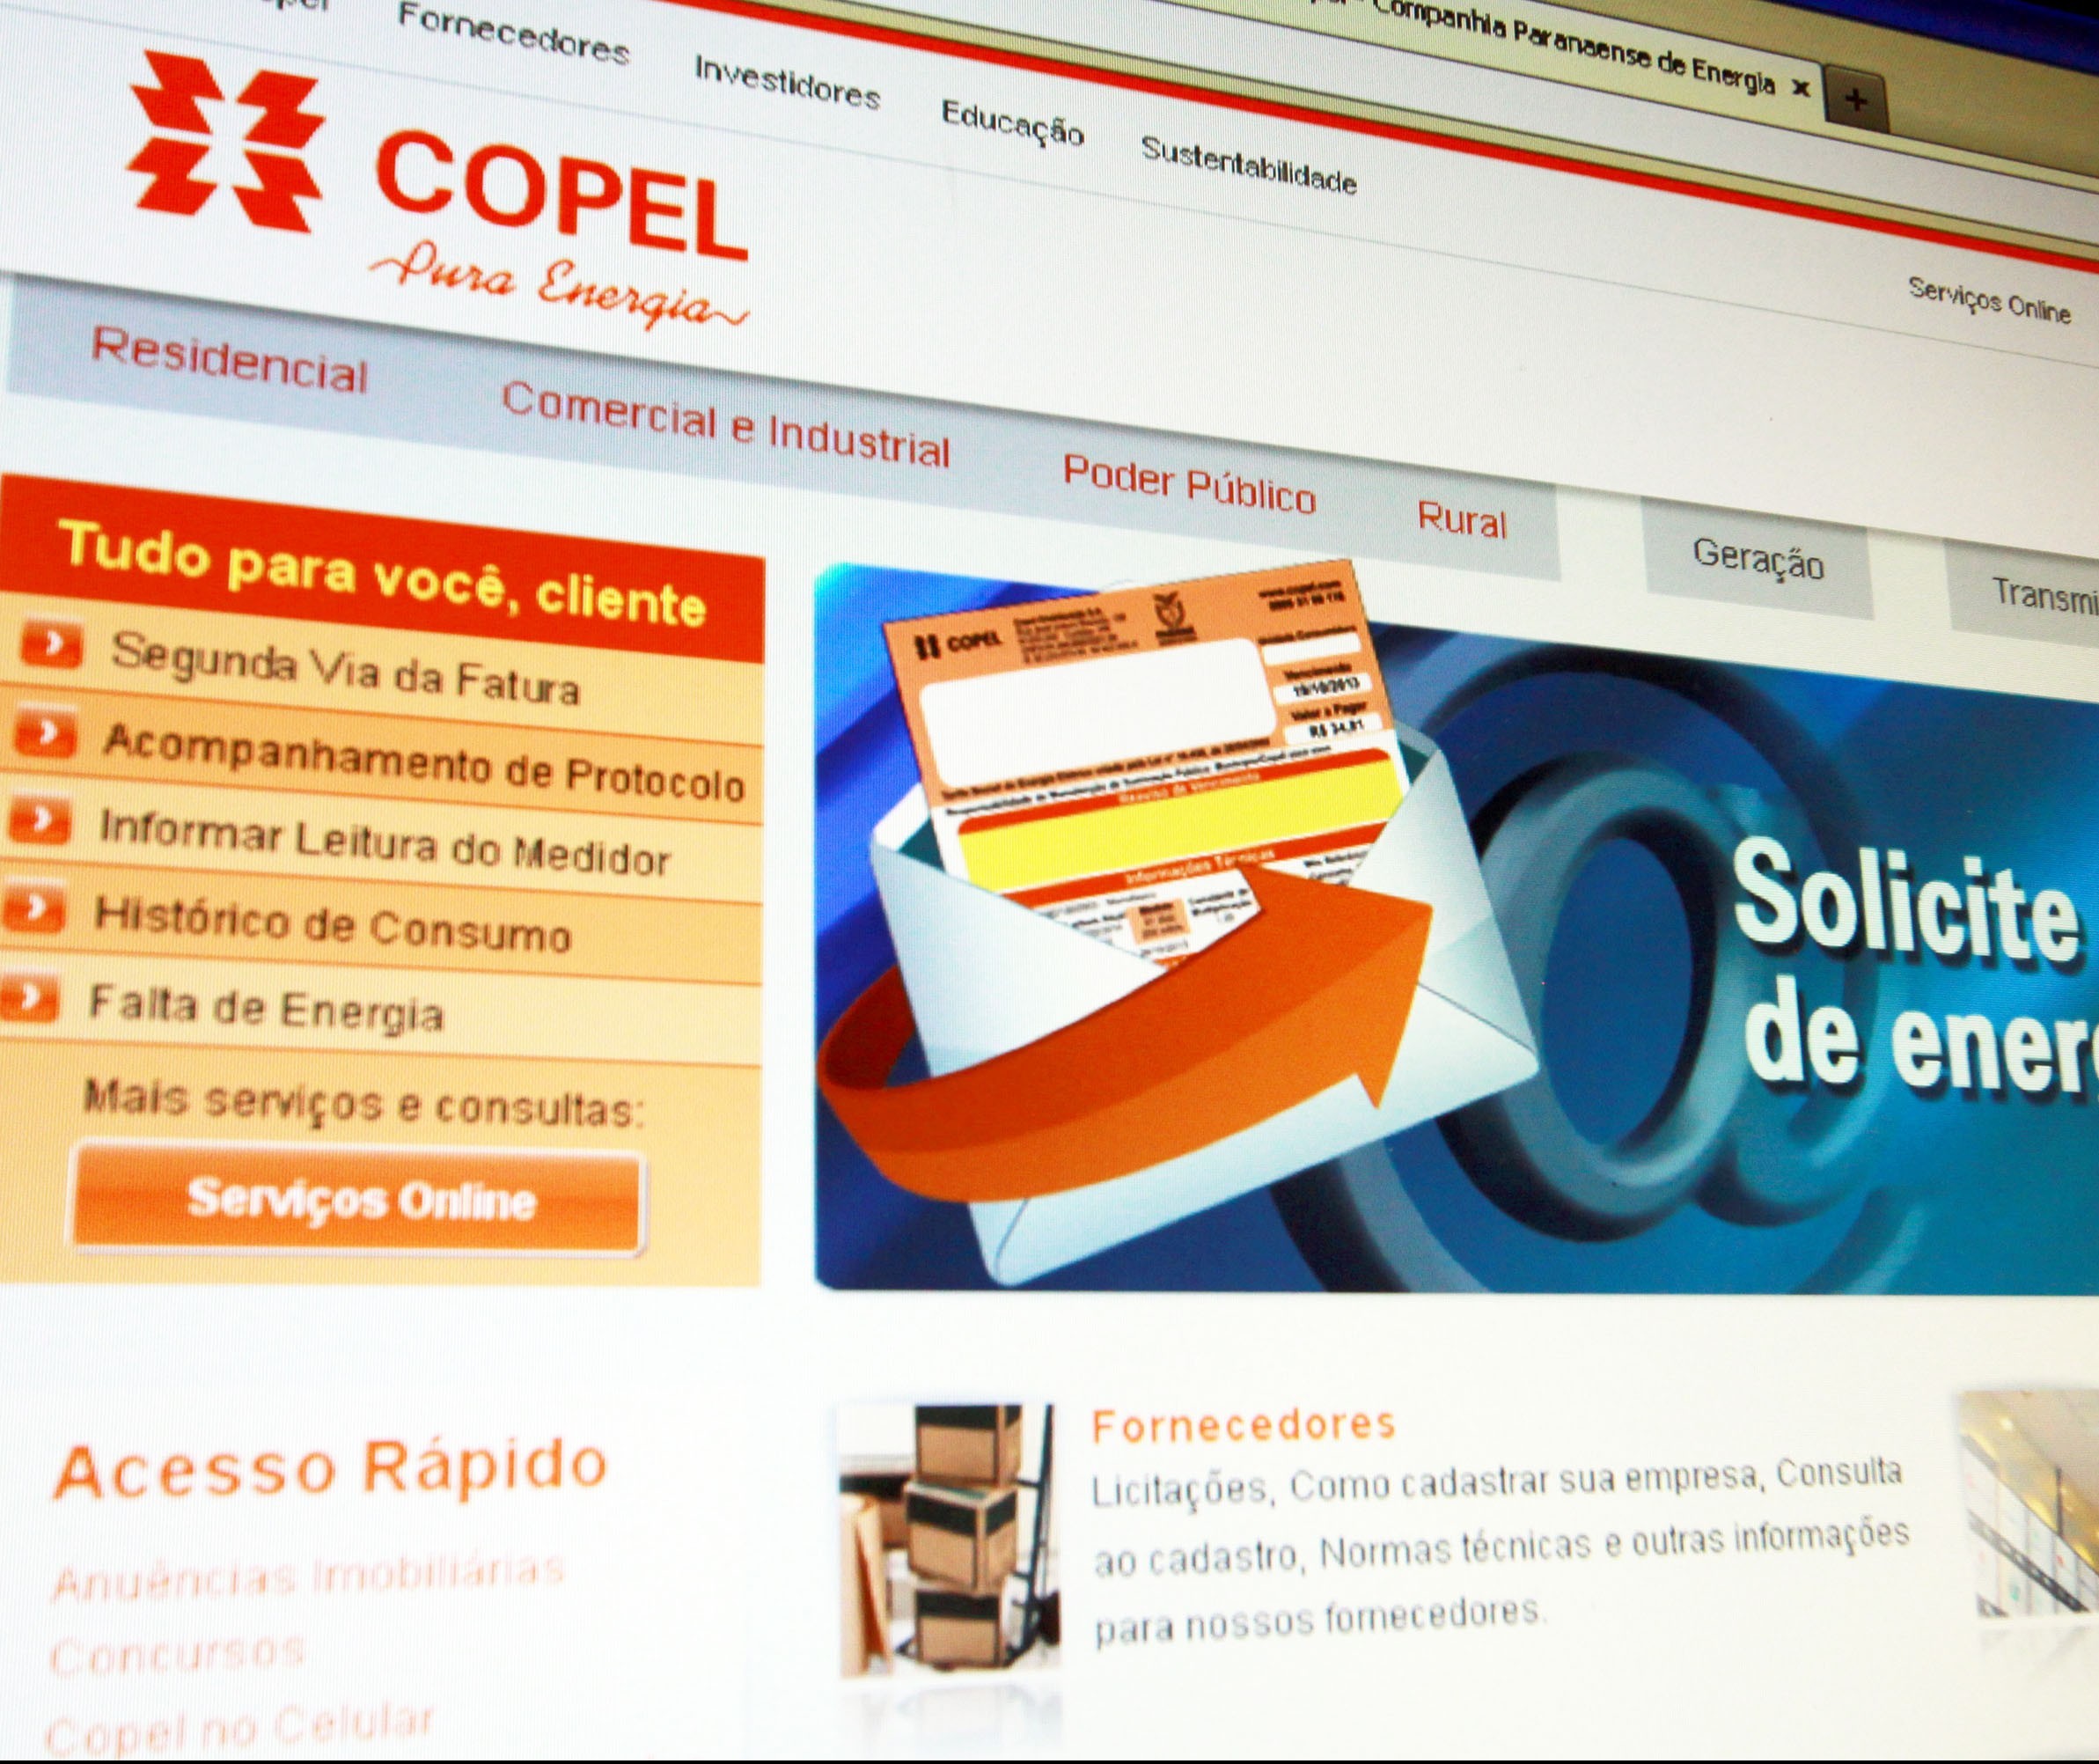 Baixo retorno financeiro é o motivo para não haver acordo entre Copel e Supermercados